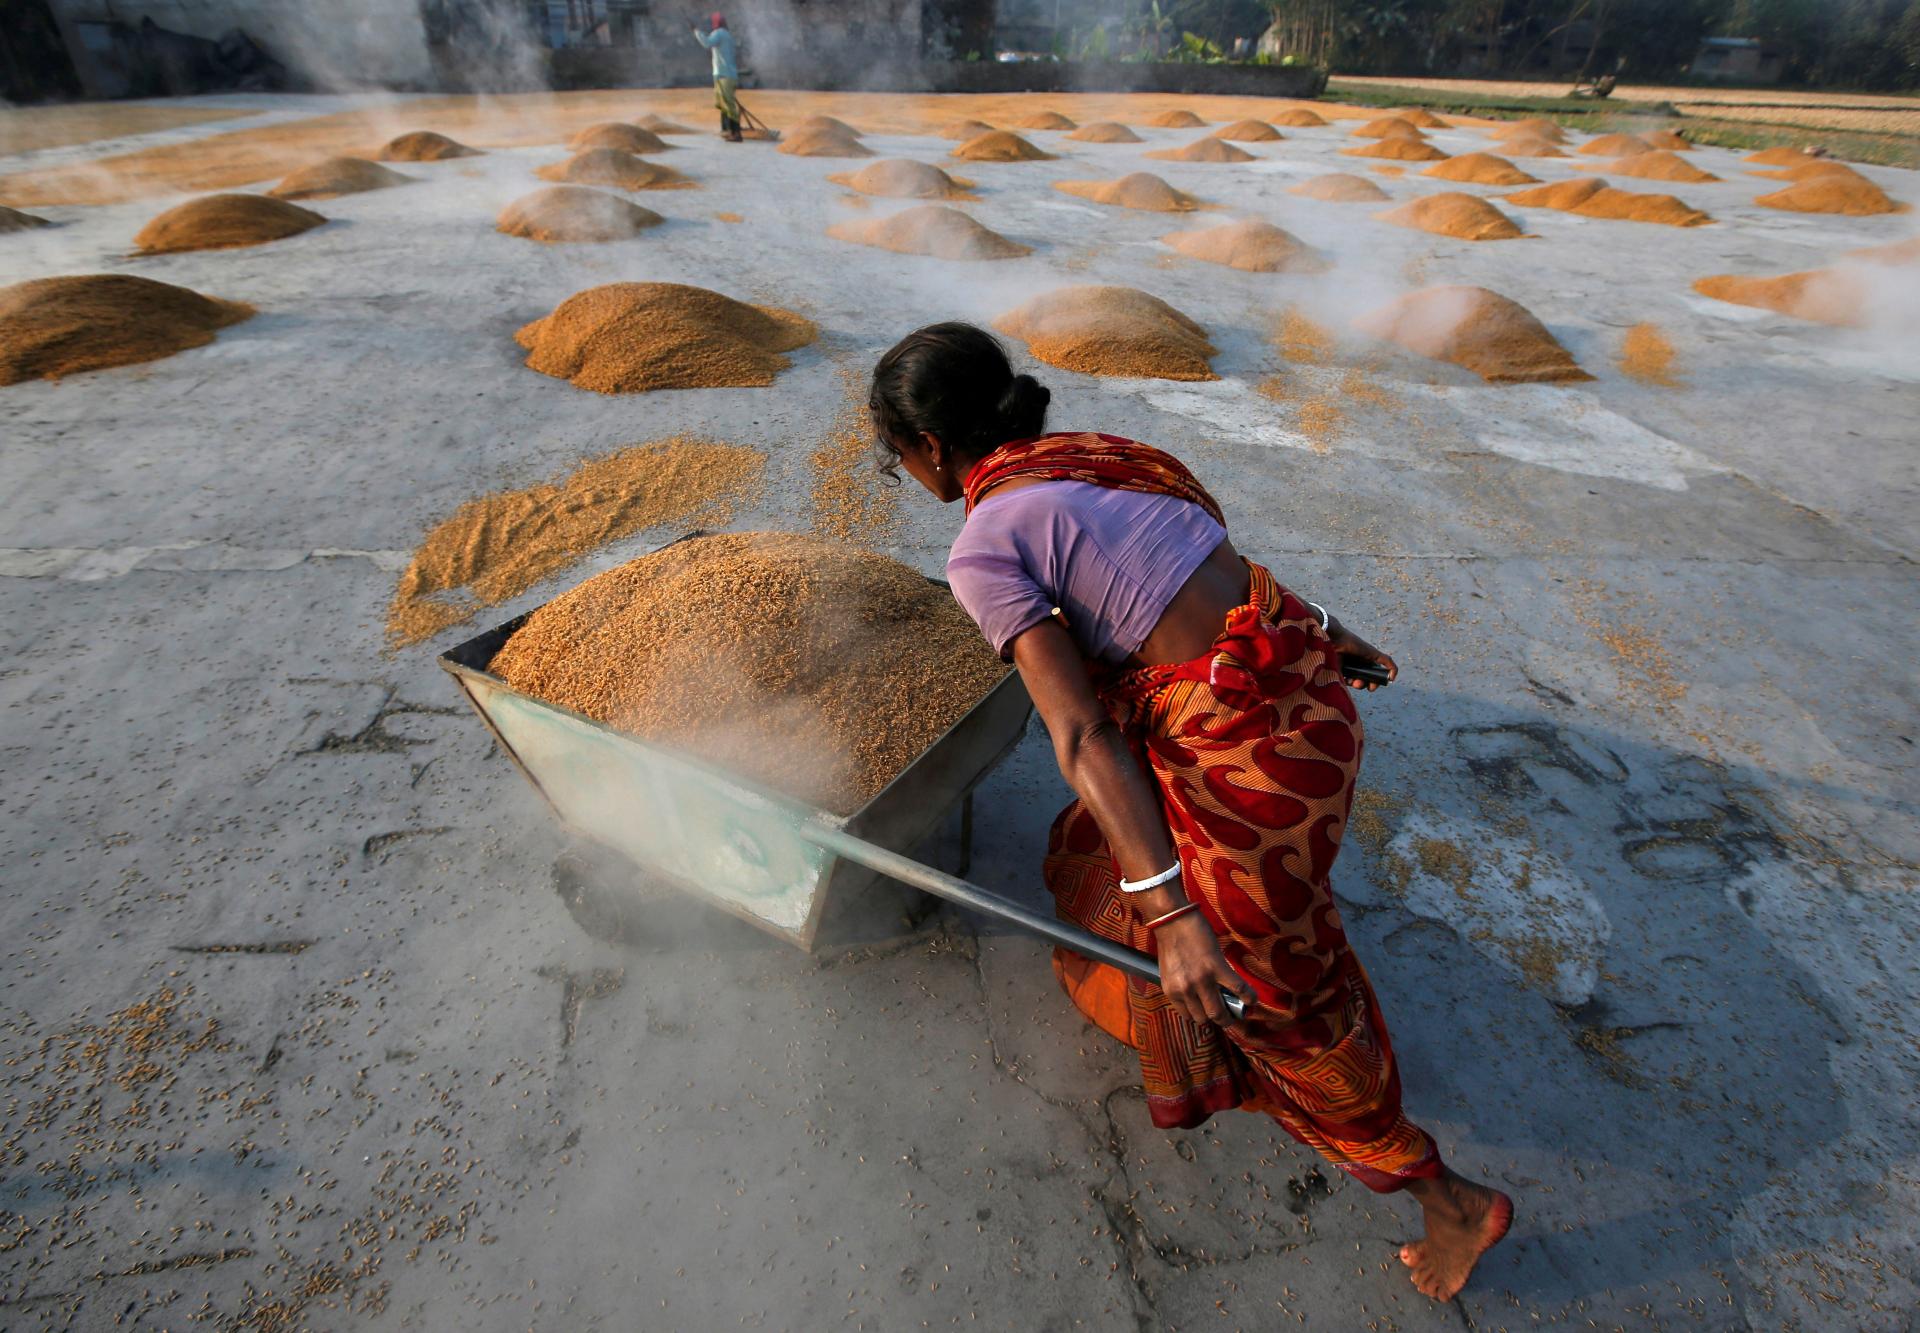 Obchodovanie s ryžou v Ázii ustalo. Po obmedzení vývozu z Indie sa očakáva rast cien